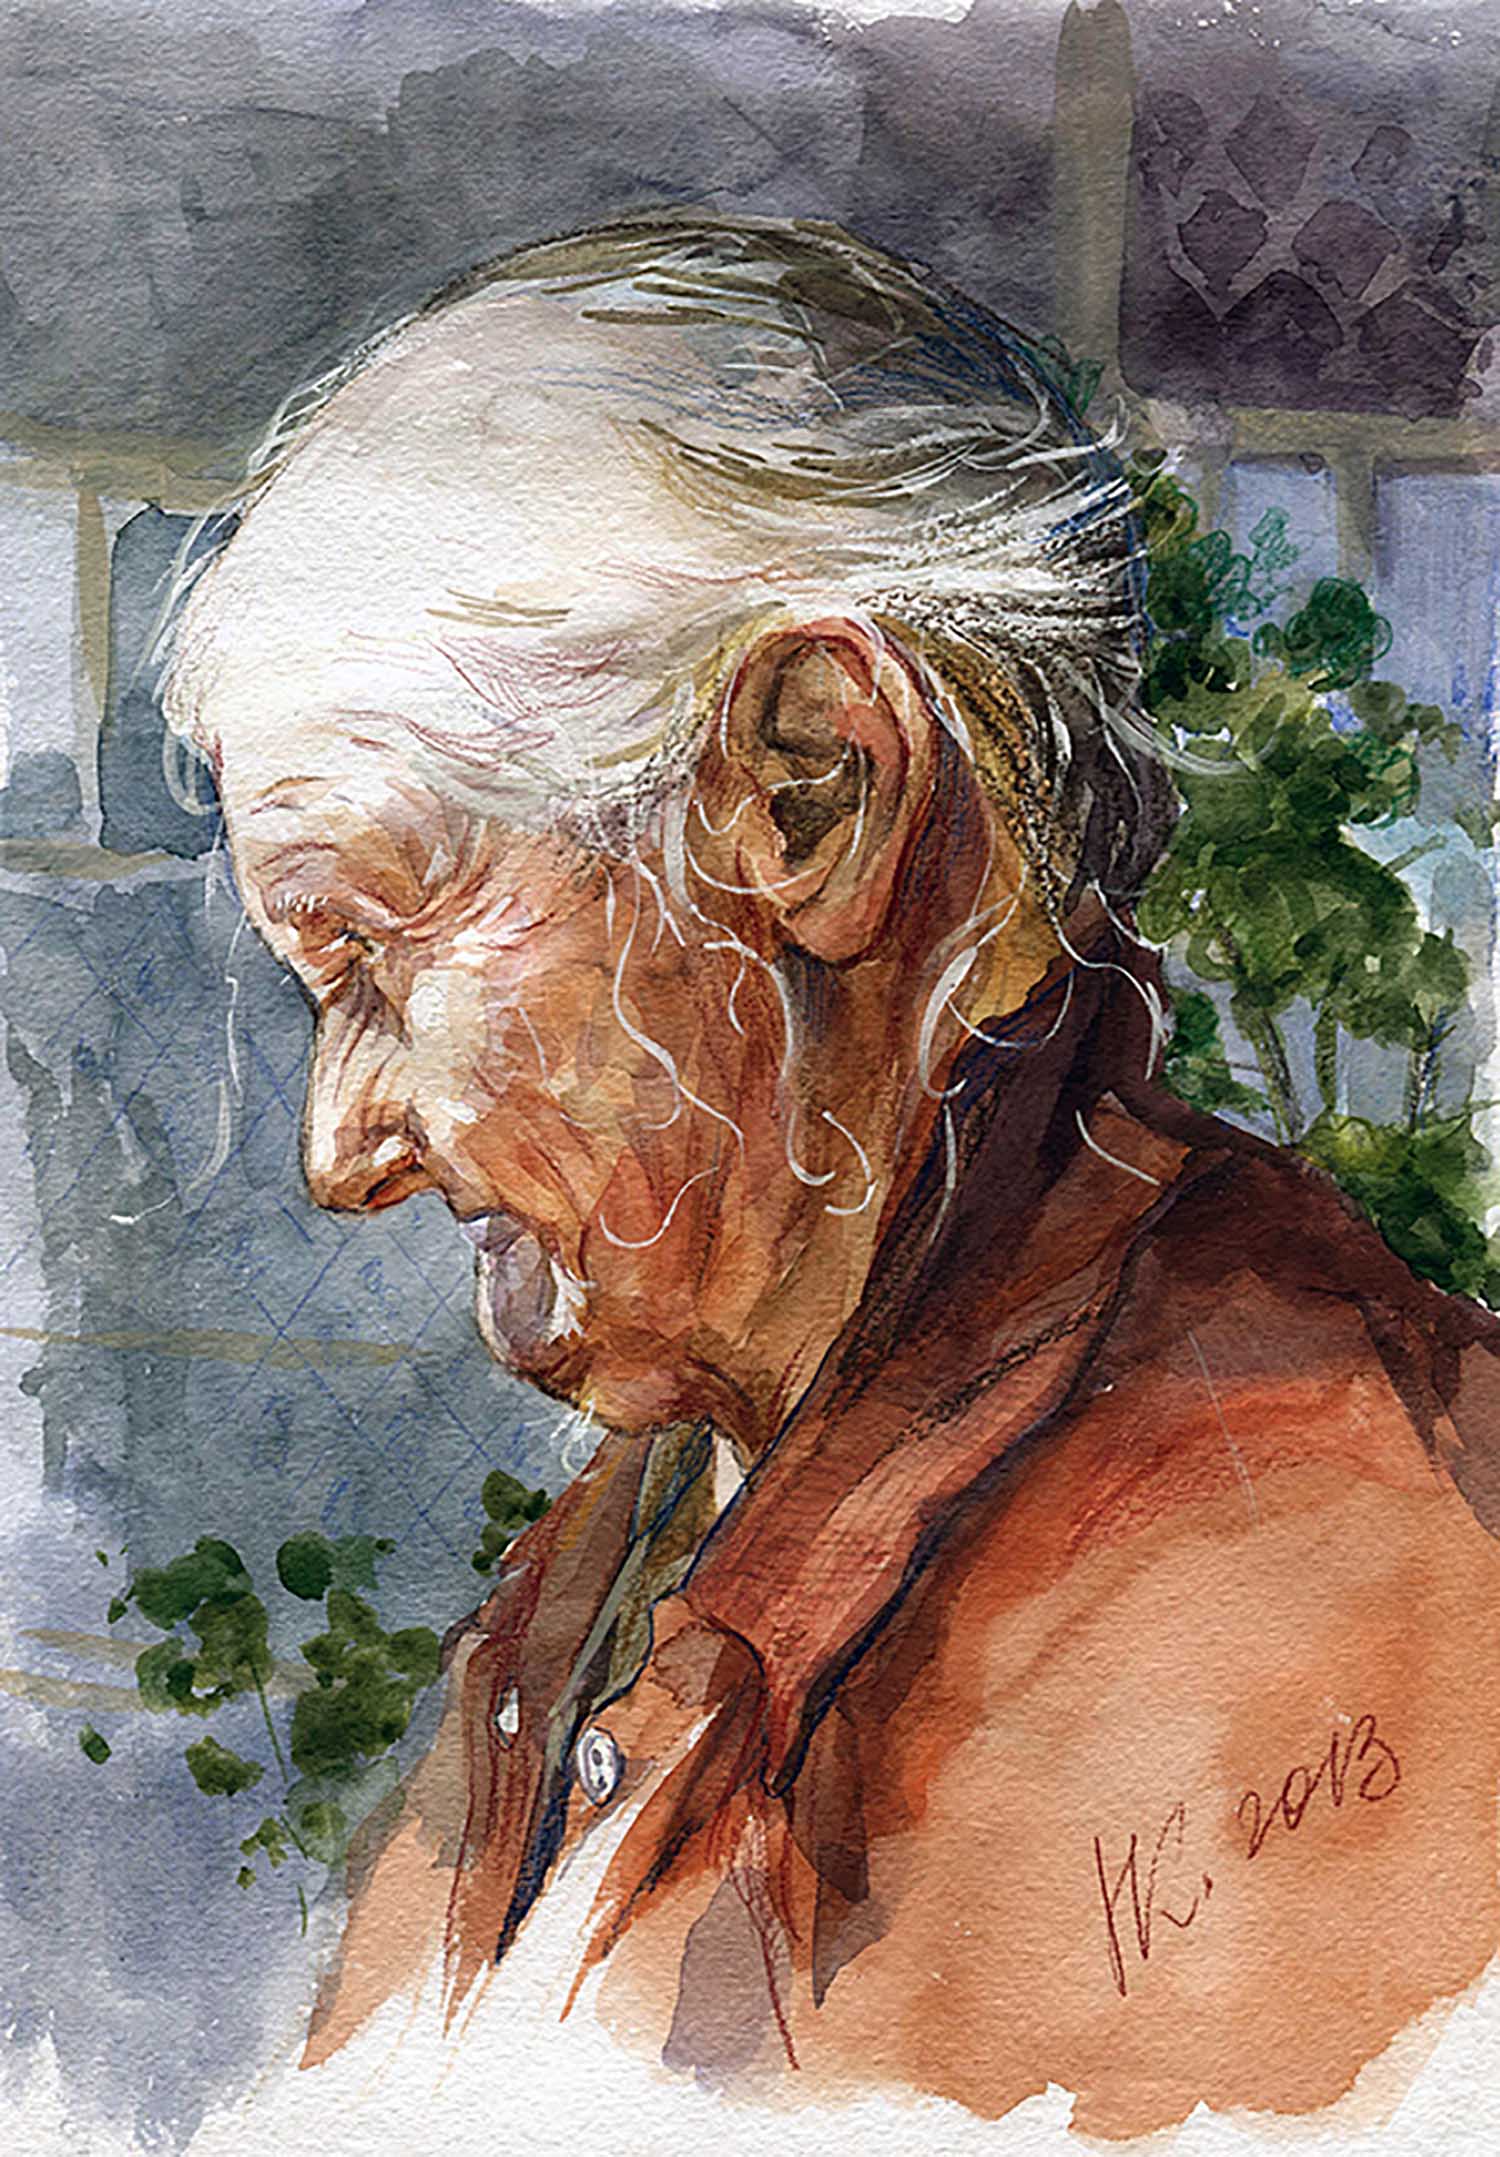 Создаем живописный портрет пожилого человека